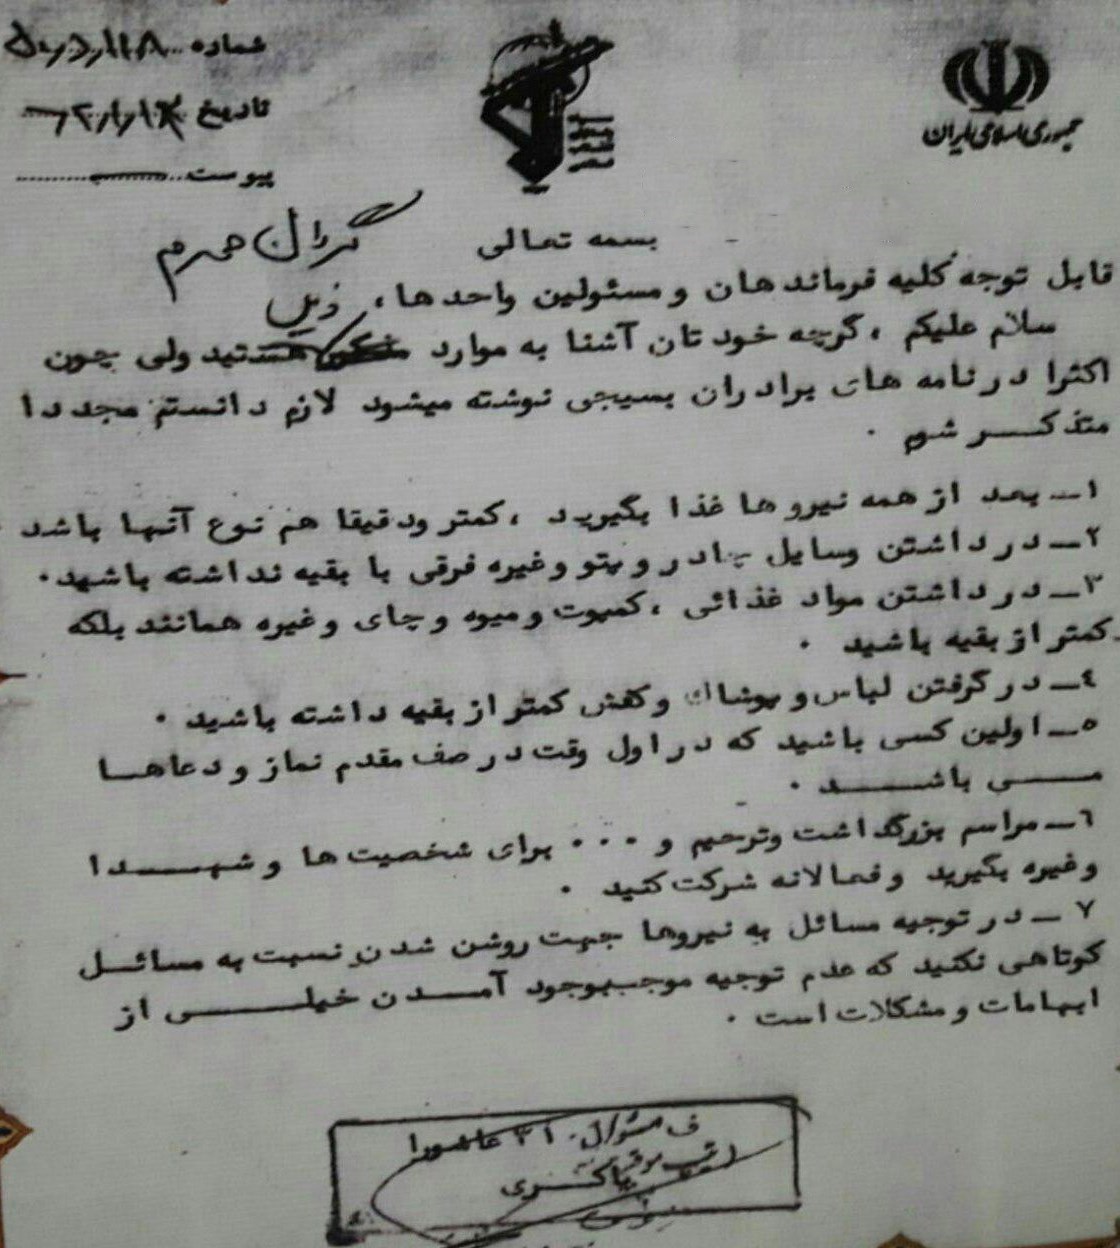 نامه قابل تأمل «شهید باکری» به نیروهای تحت امرش+ عکس